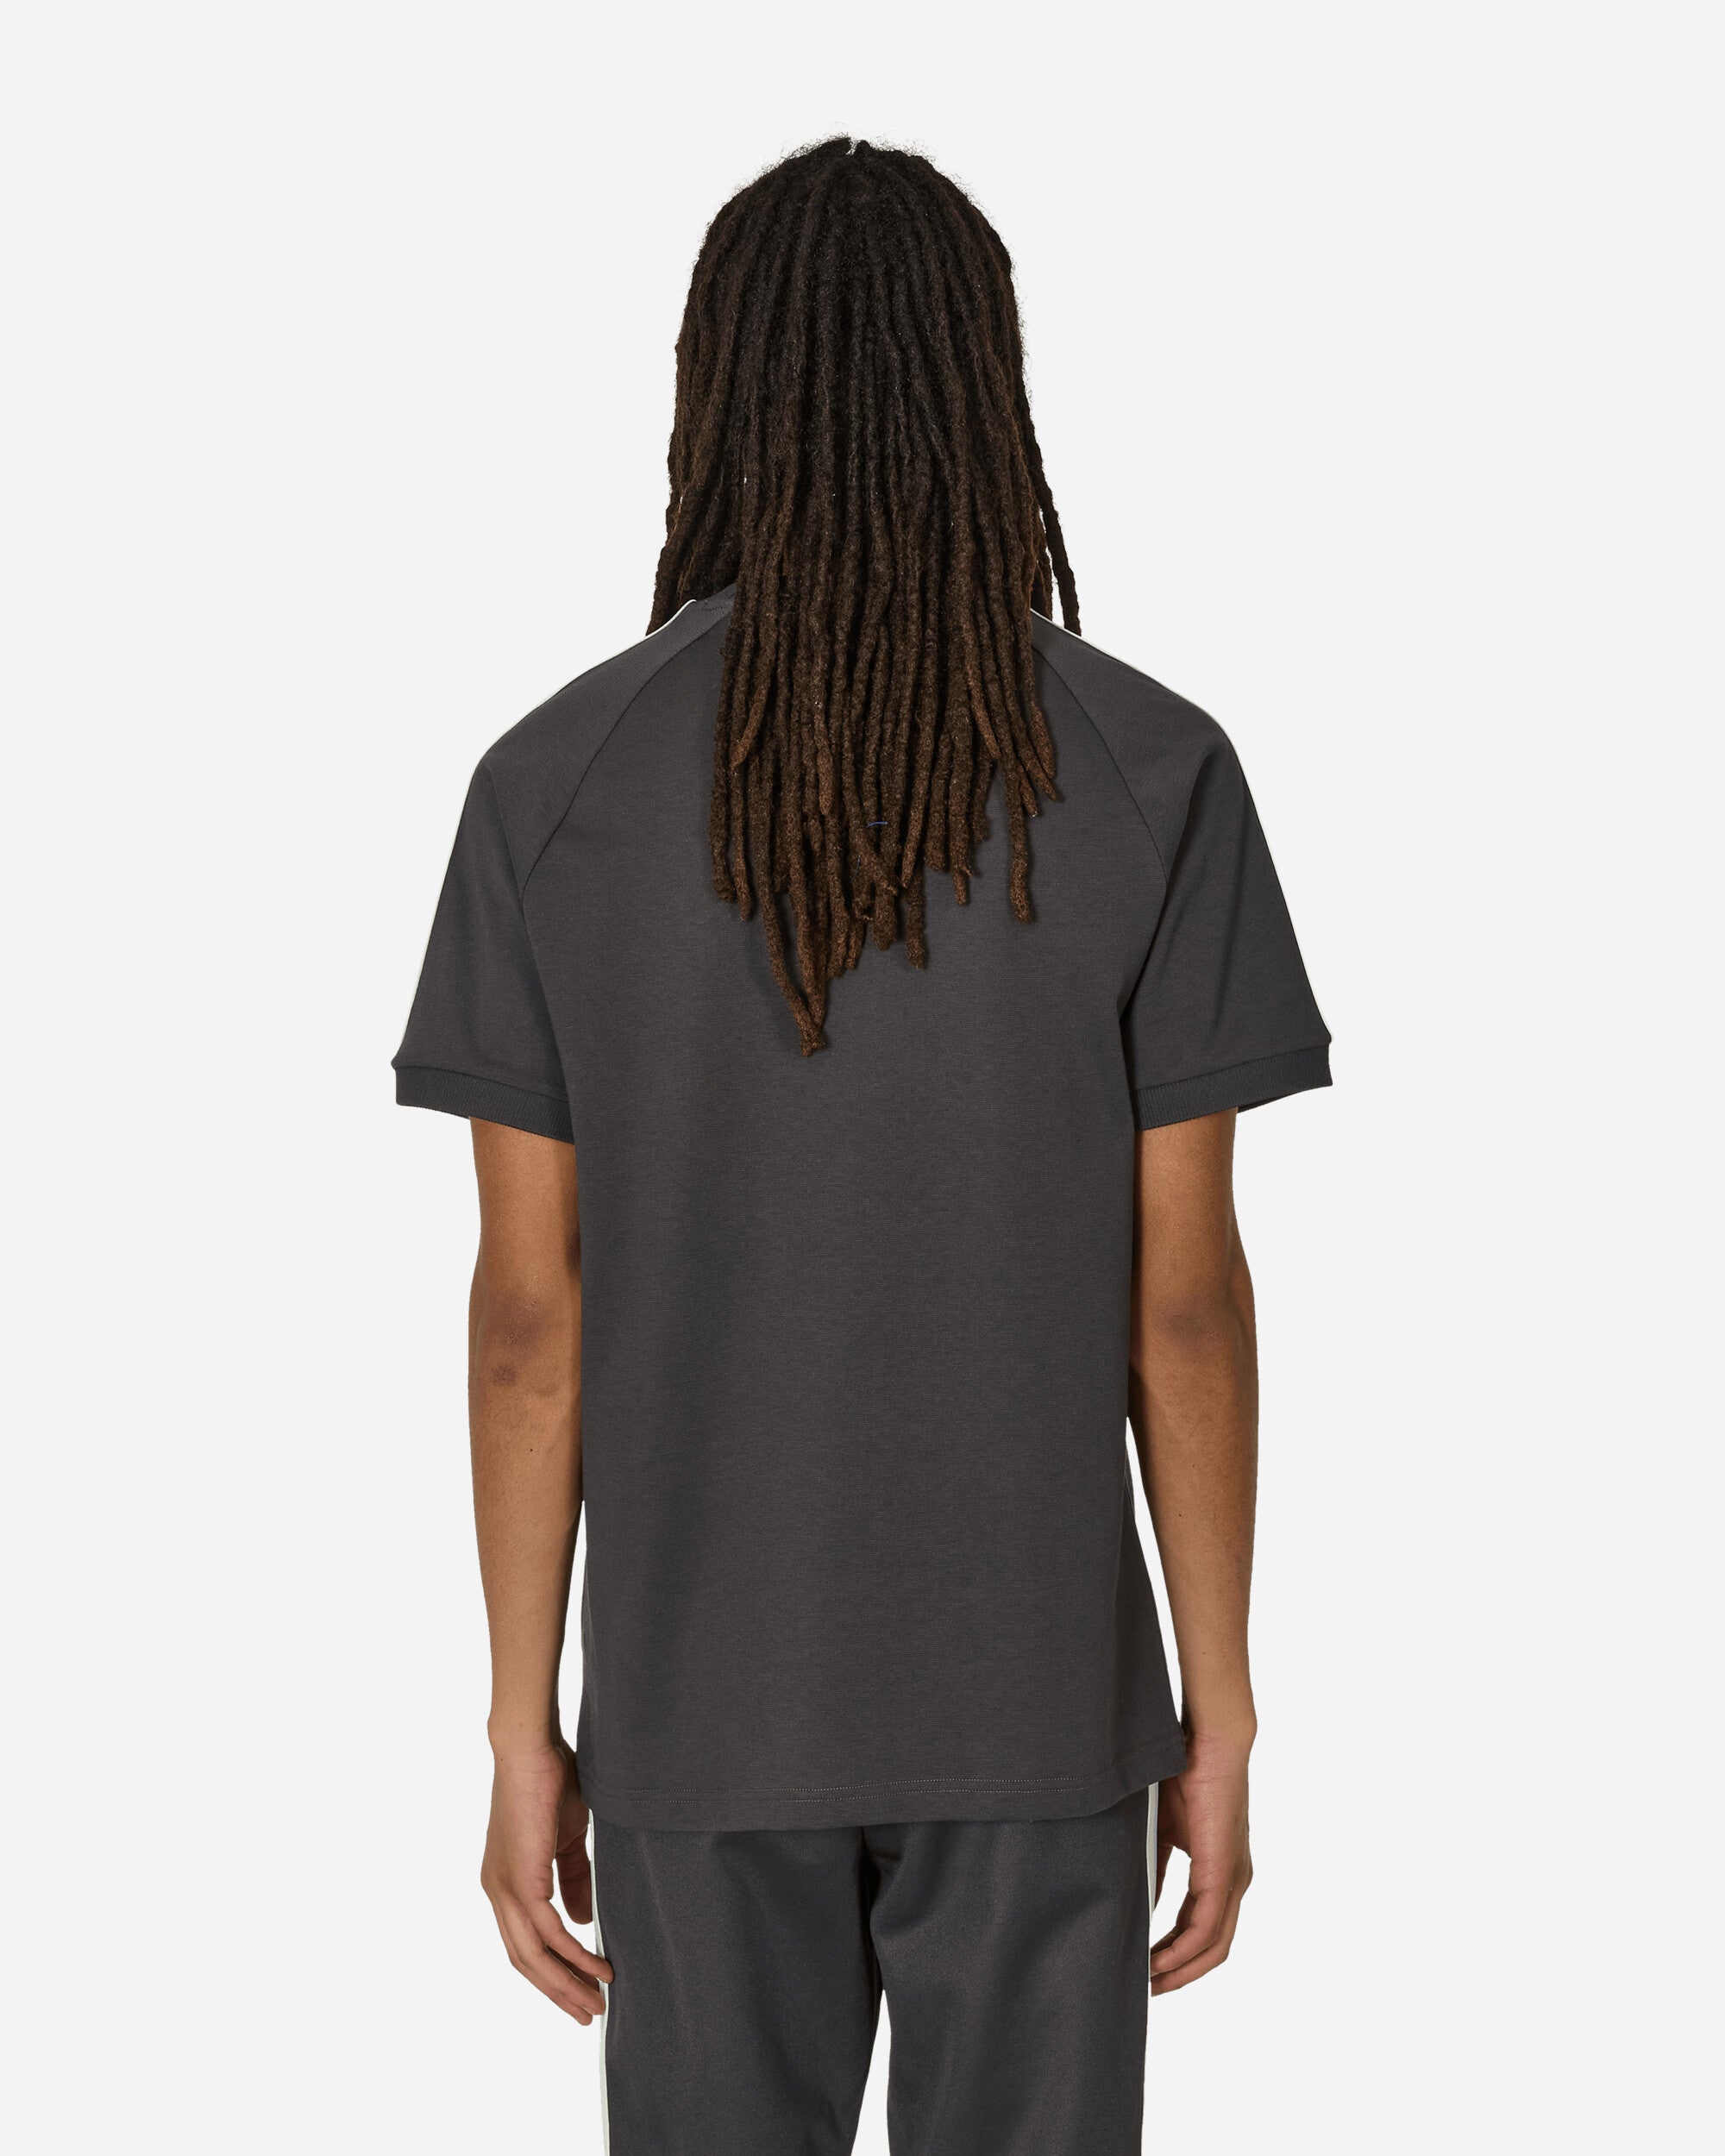 adidas Afa Og 3S Tee Utility Black T-Shirts Shortsleeve IU2154 001